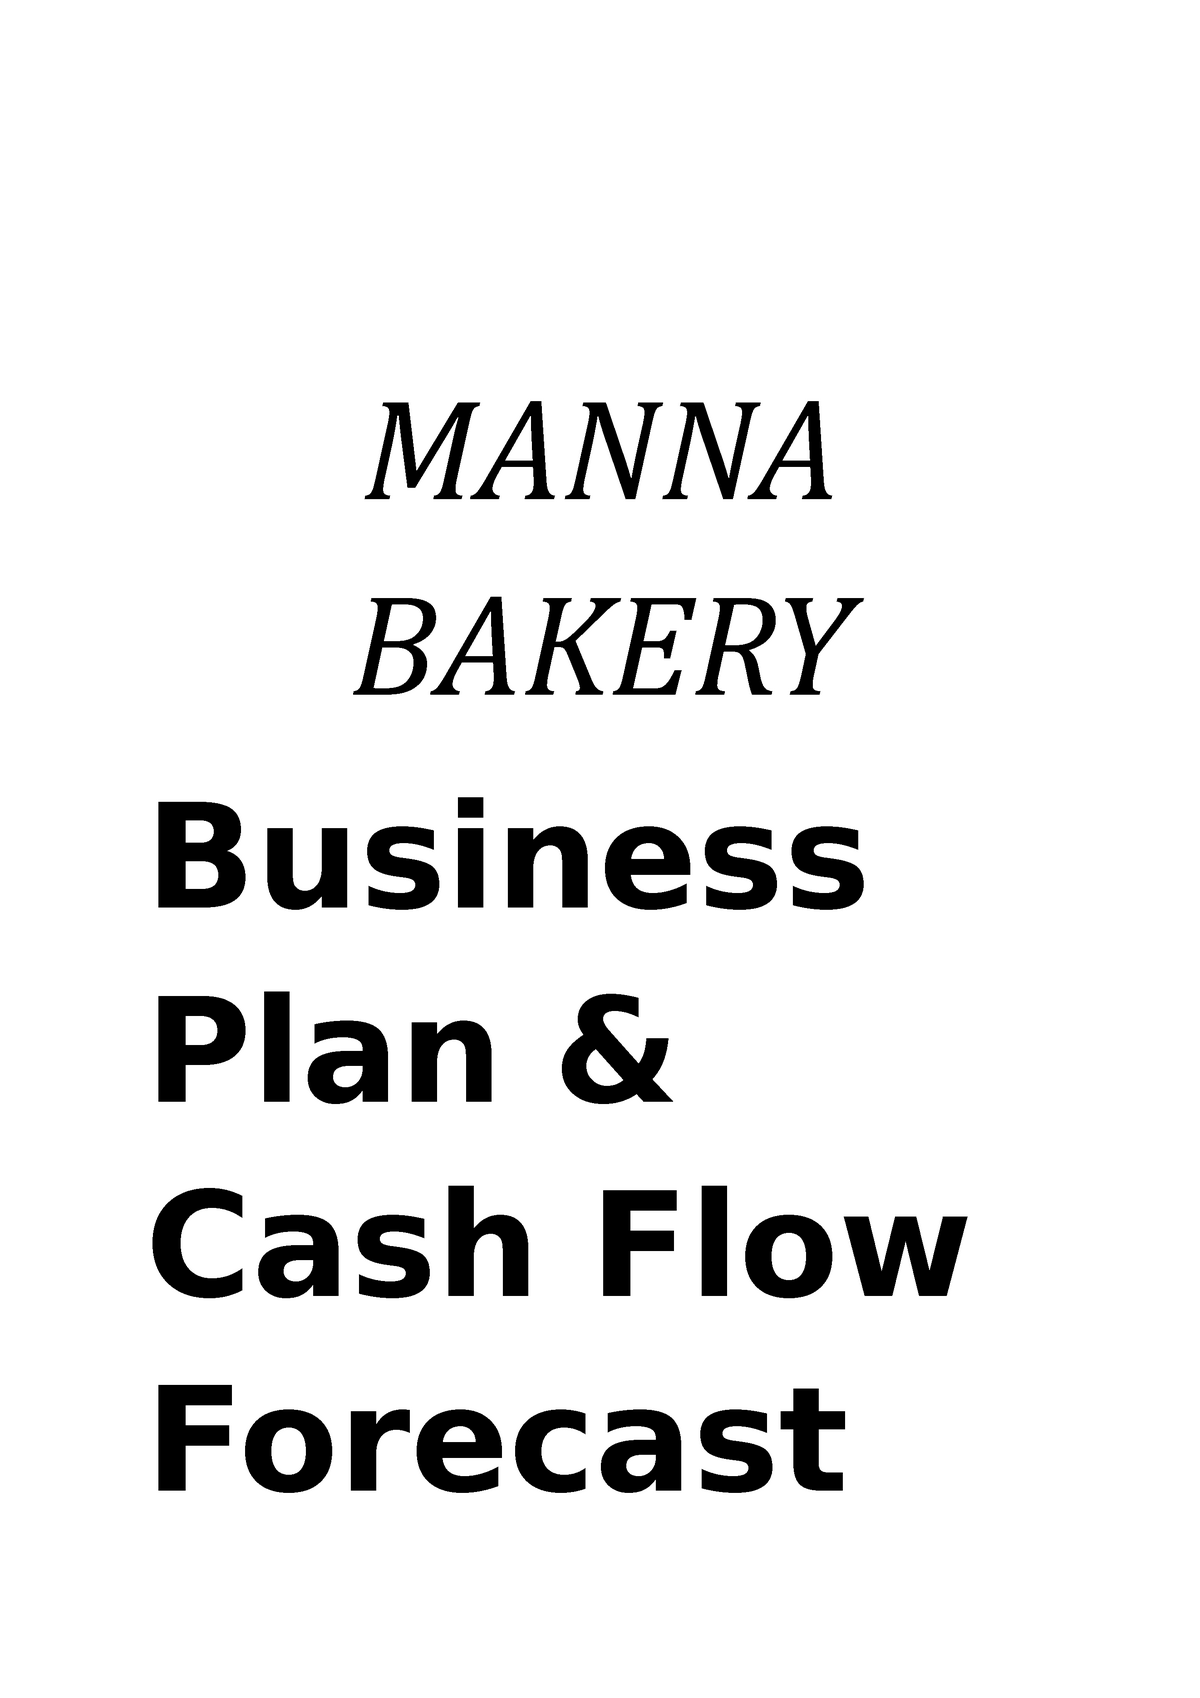 manna bakery business plan